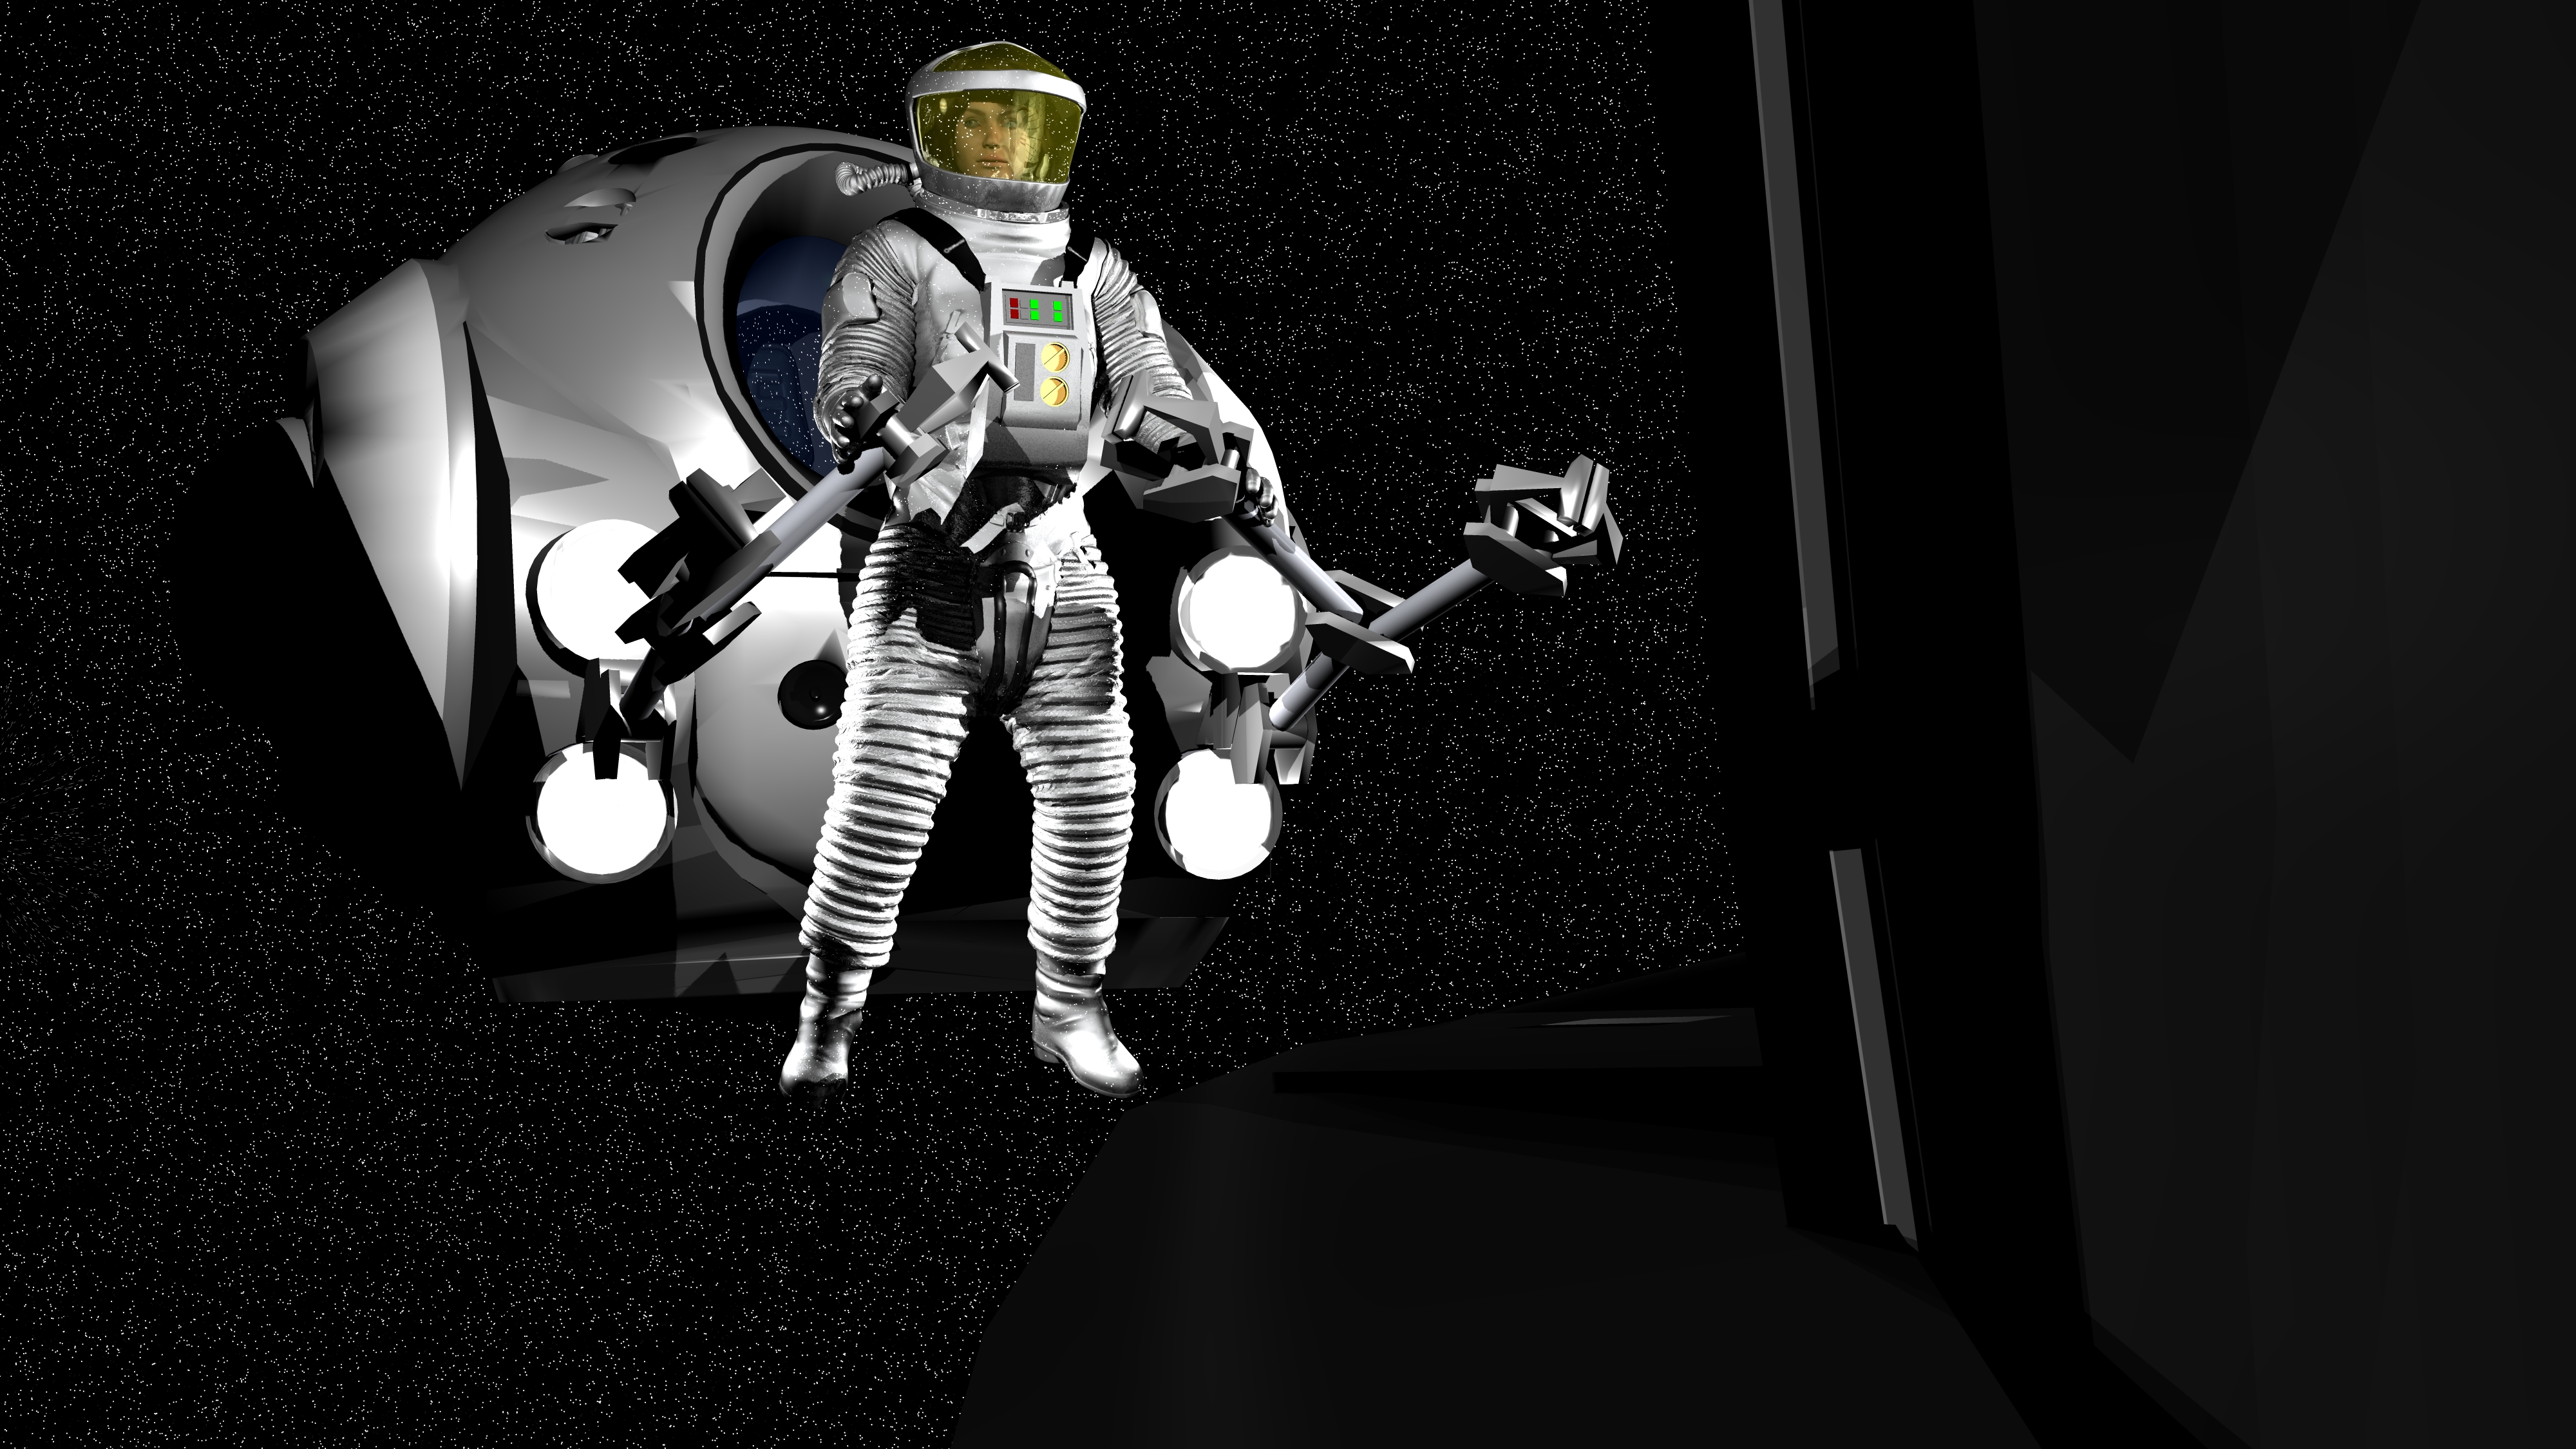 jogo spaceman by spacemanaposta on DeviantArt